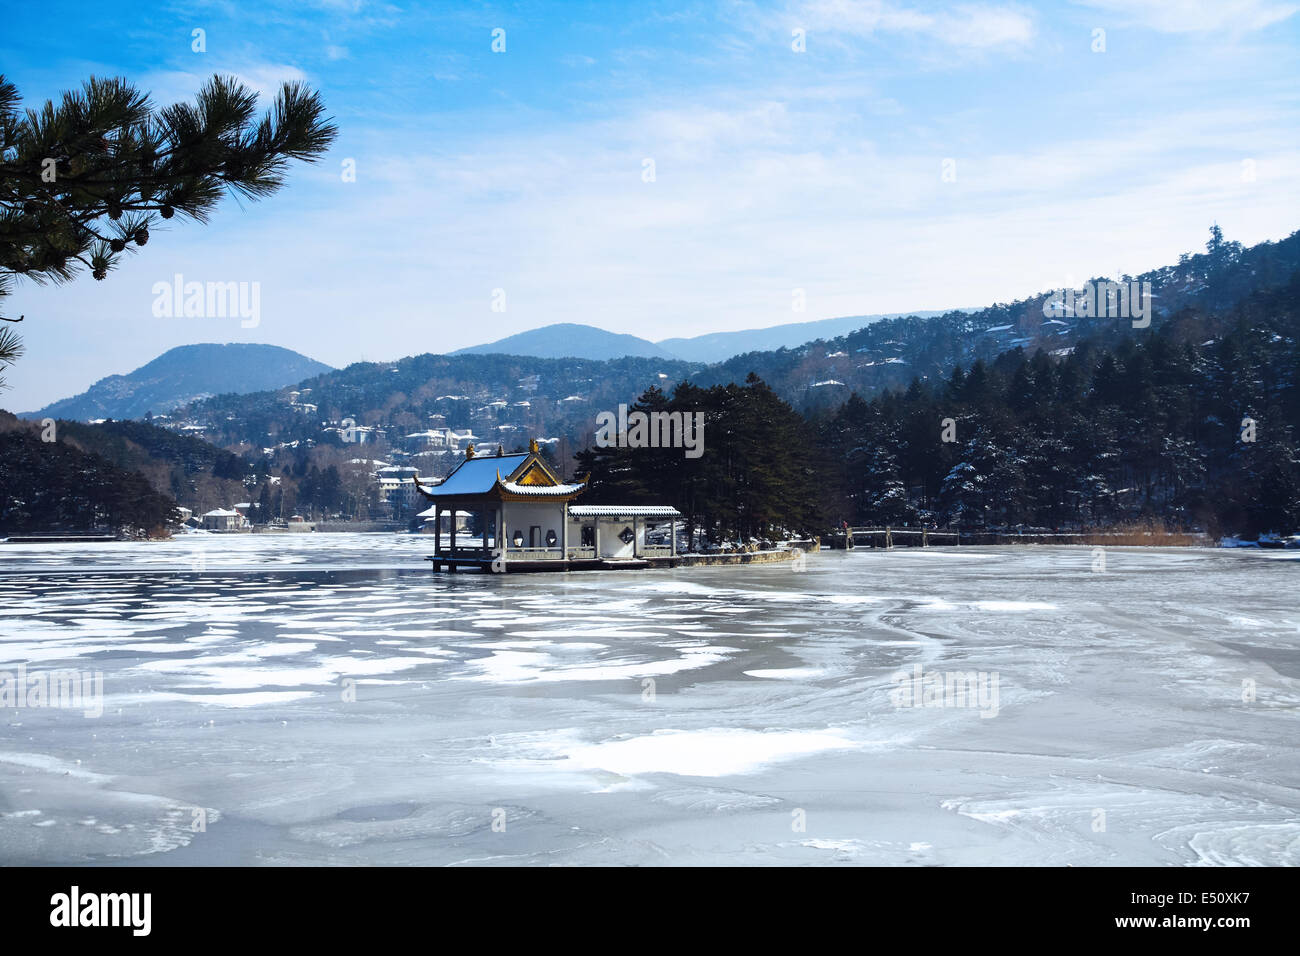 lushan lake in winter Stock Photo